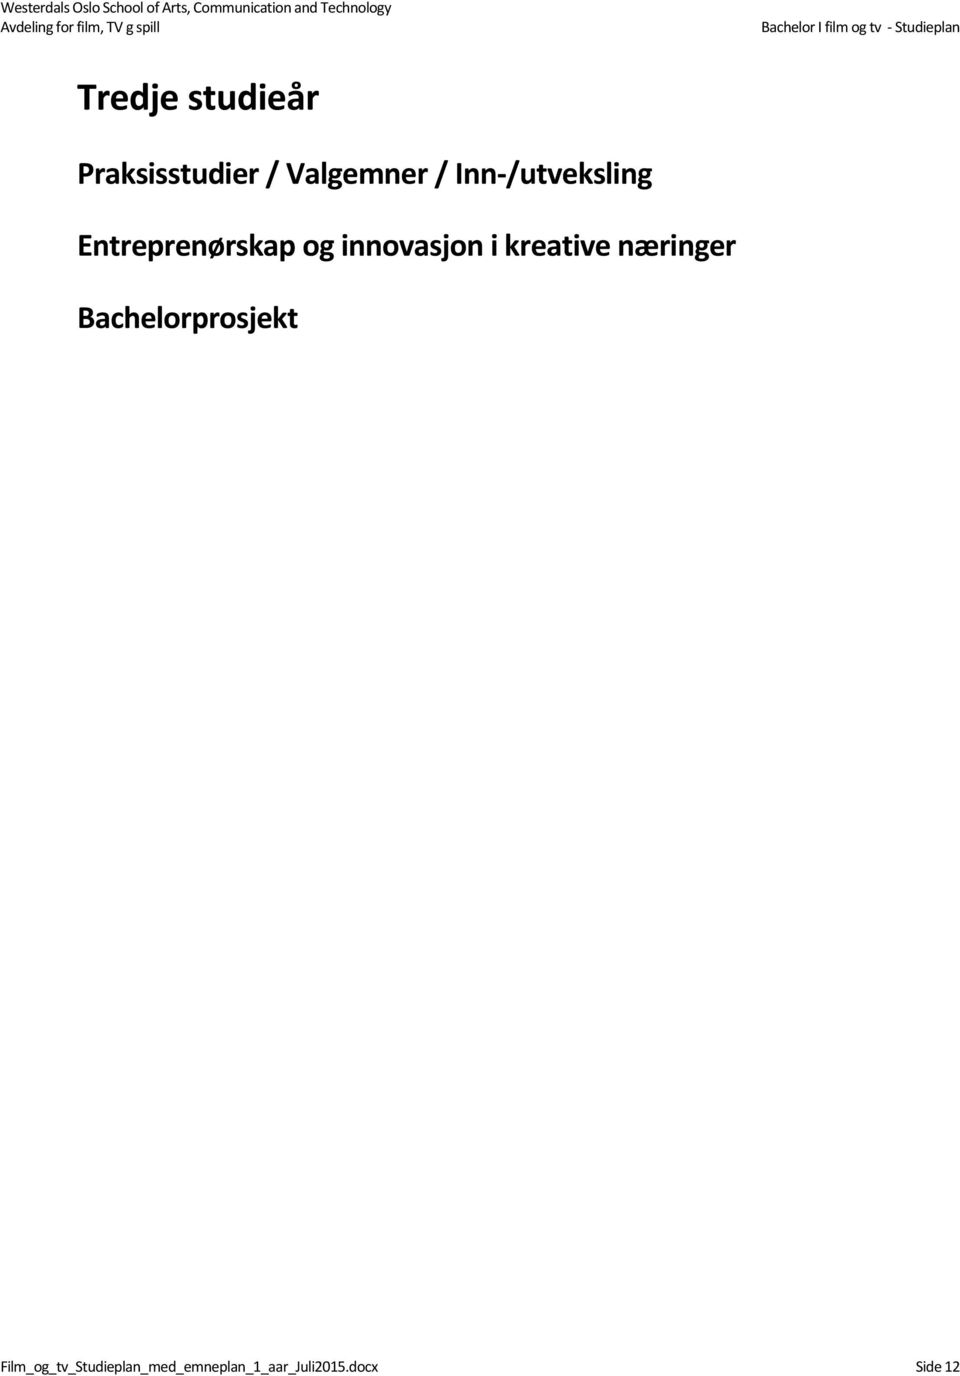 Entreprenørskap og innovasjon i